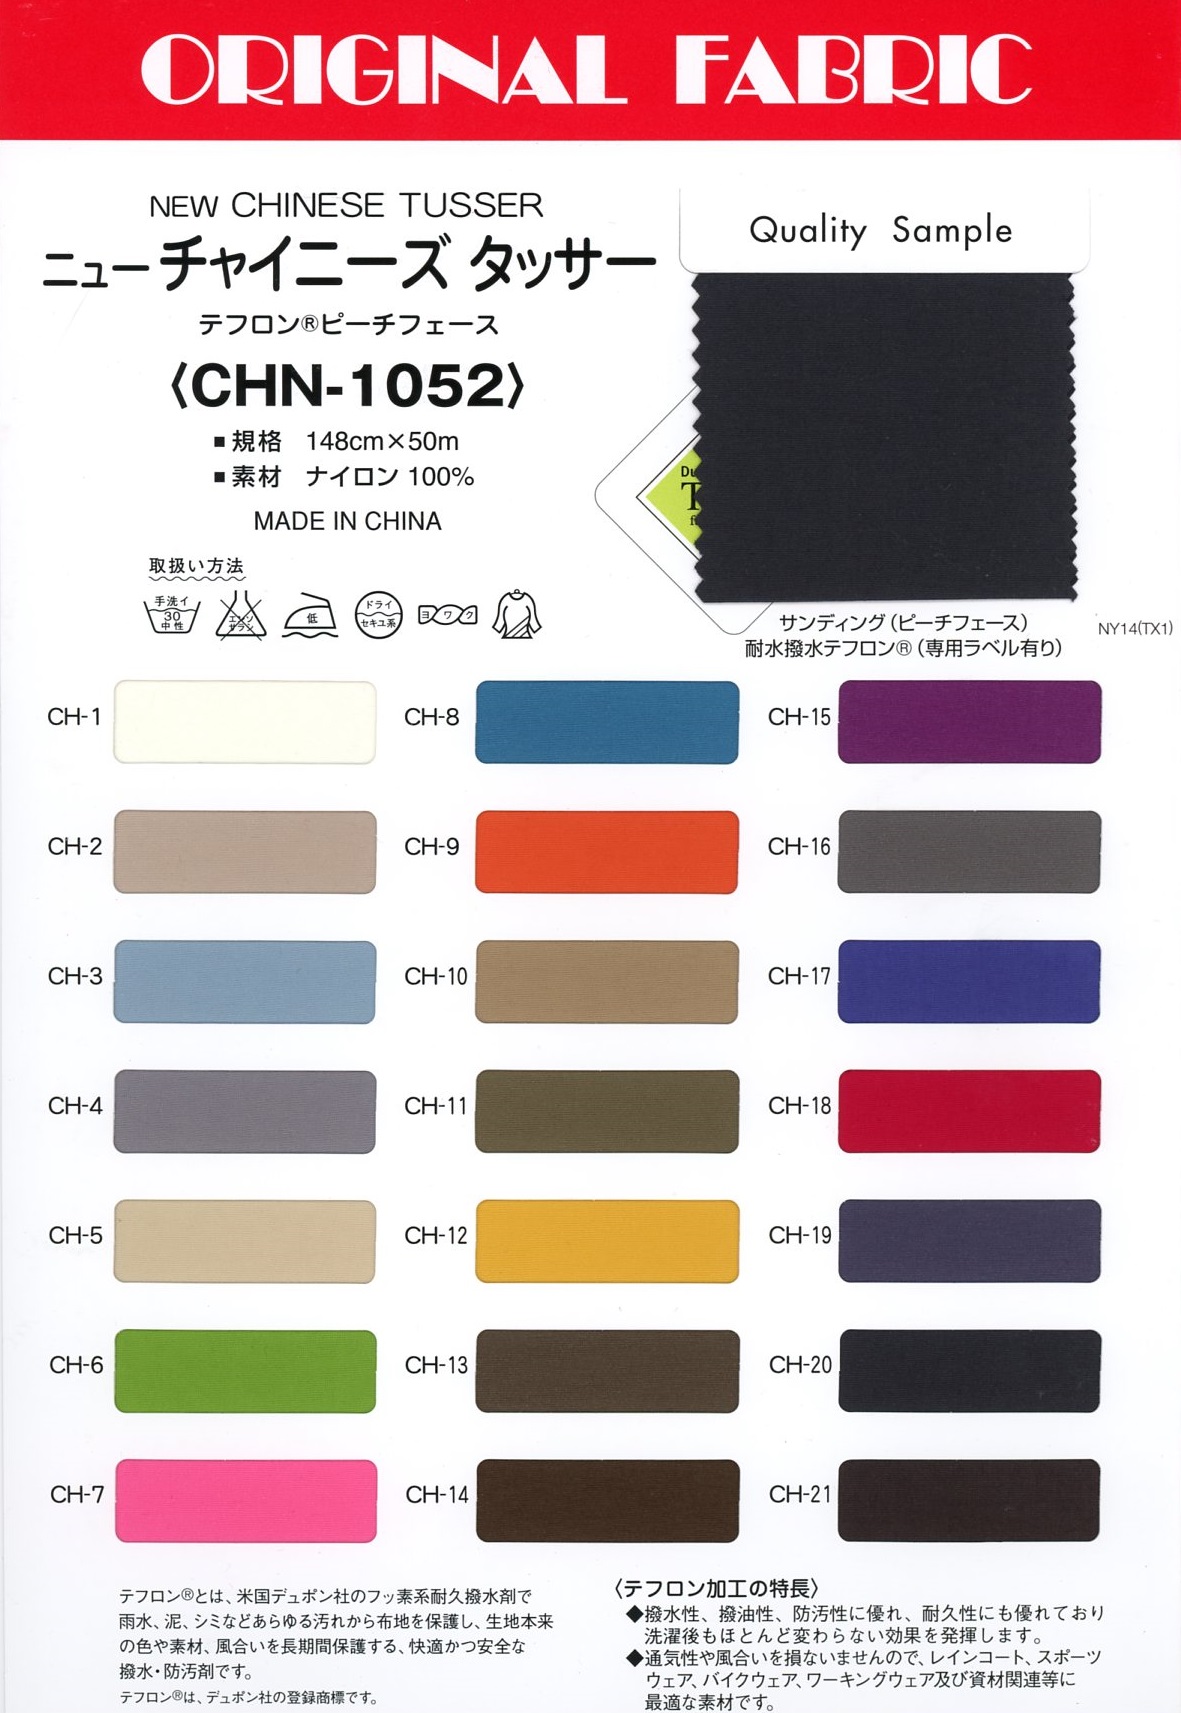 CHN-1052 Nuevo Tussar Chino[Fabrica Textil] Masuda